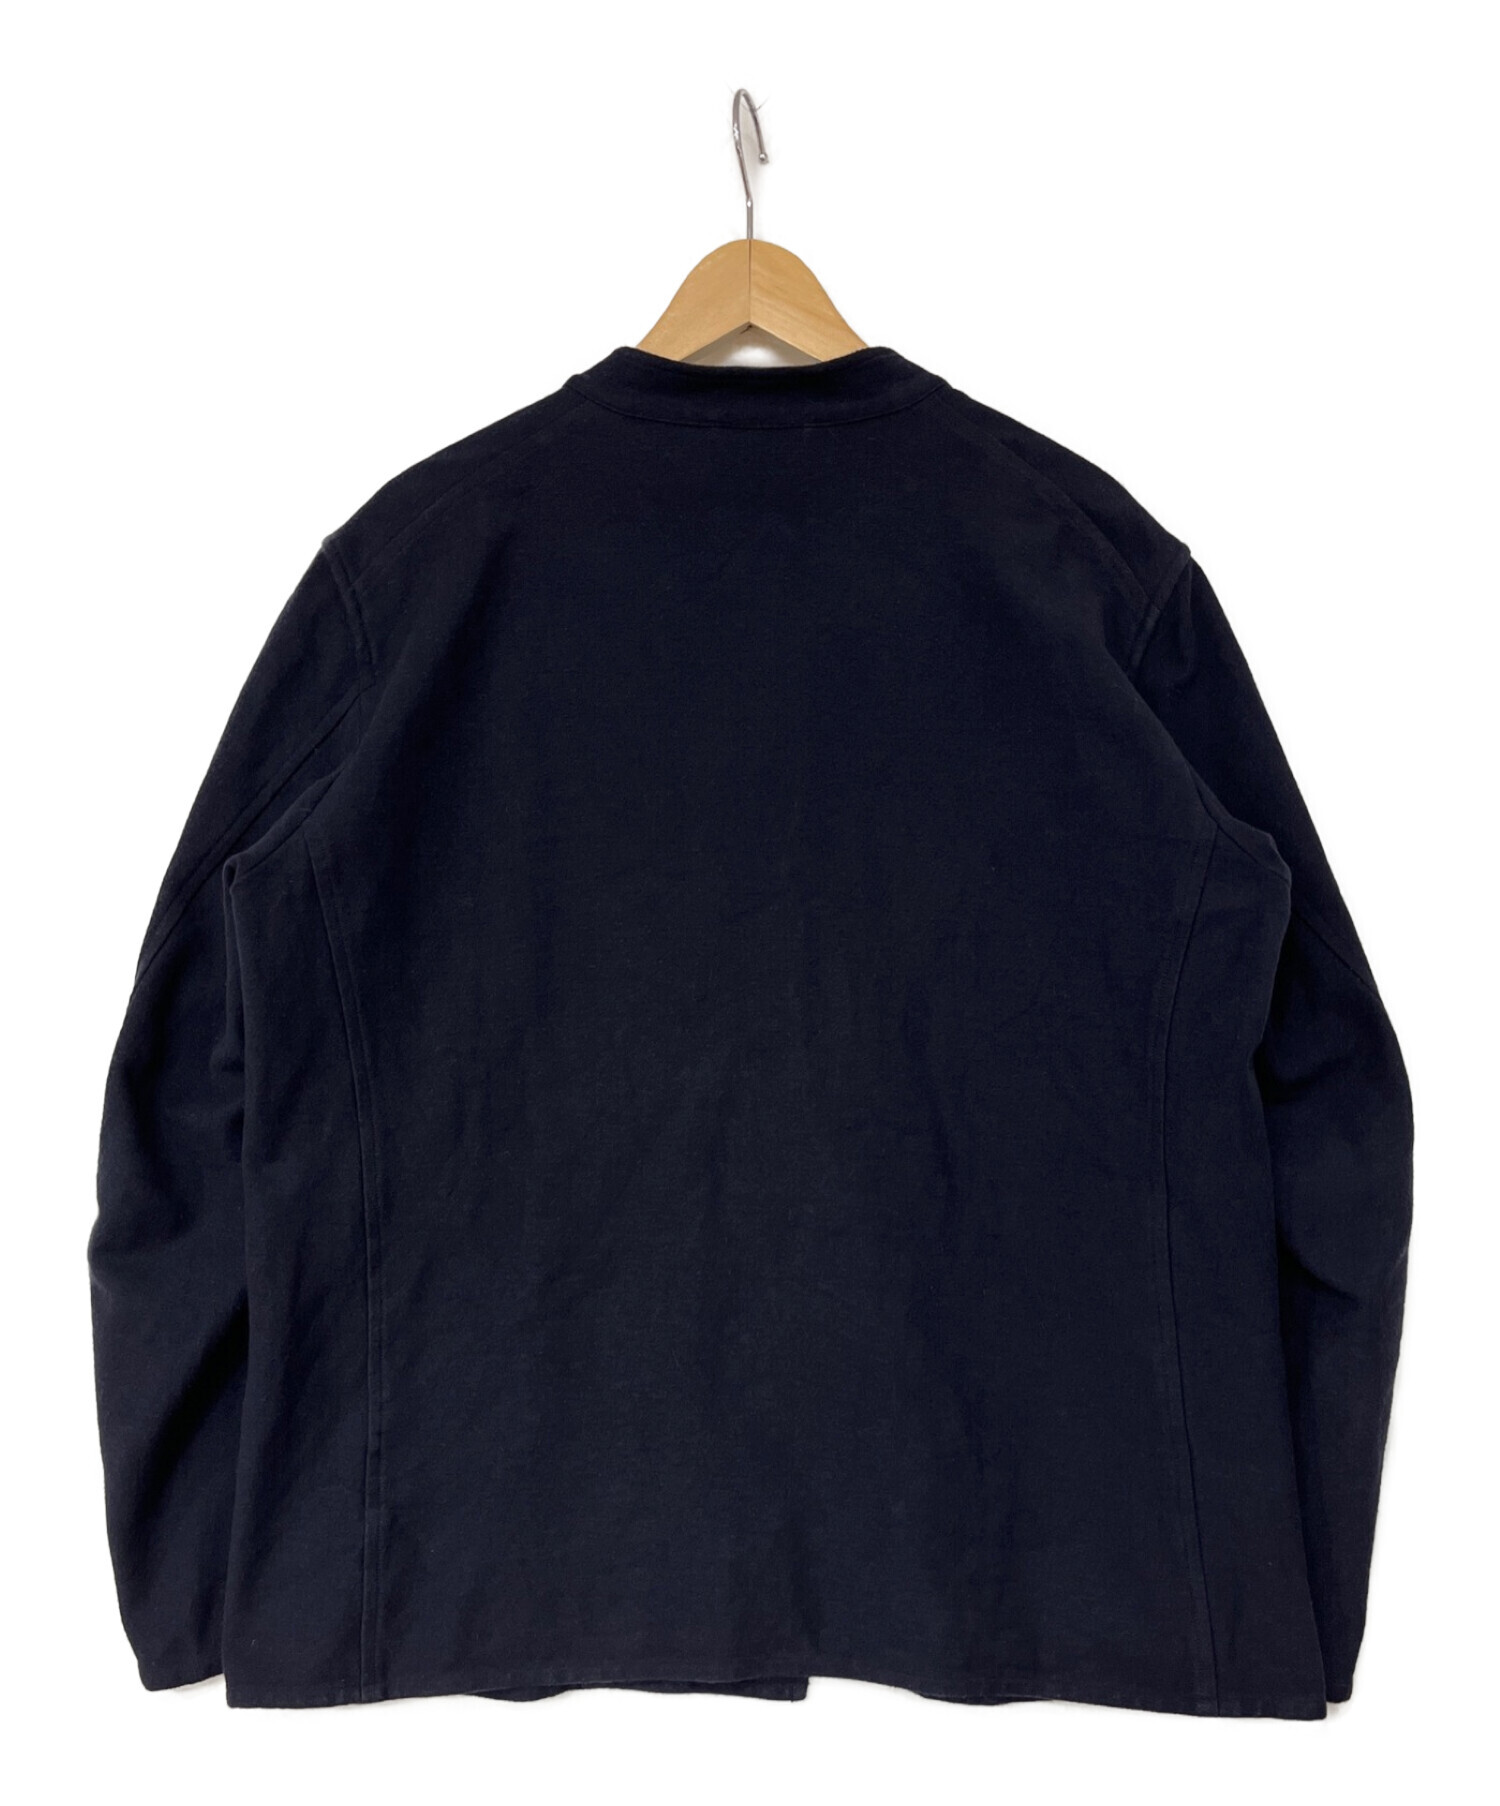 COMOLI (コモリ) インレイツイルスタンドカラージャケット ネイビー サイズ:2